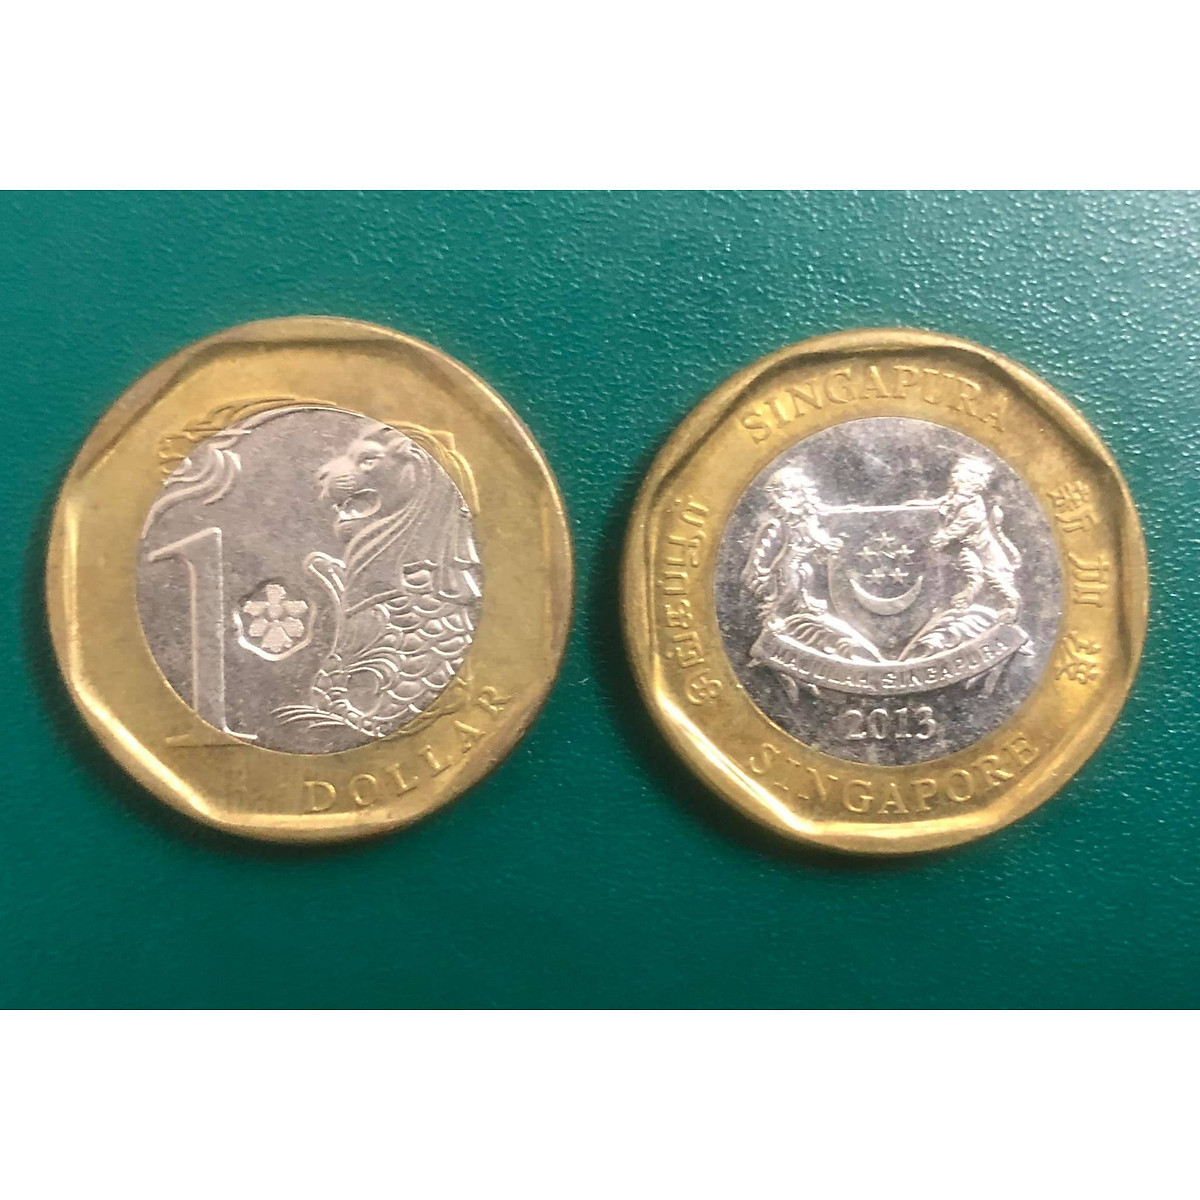 Đồng xu Singapore 1 dollar phiên bản mới